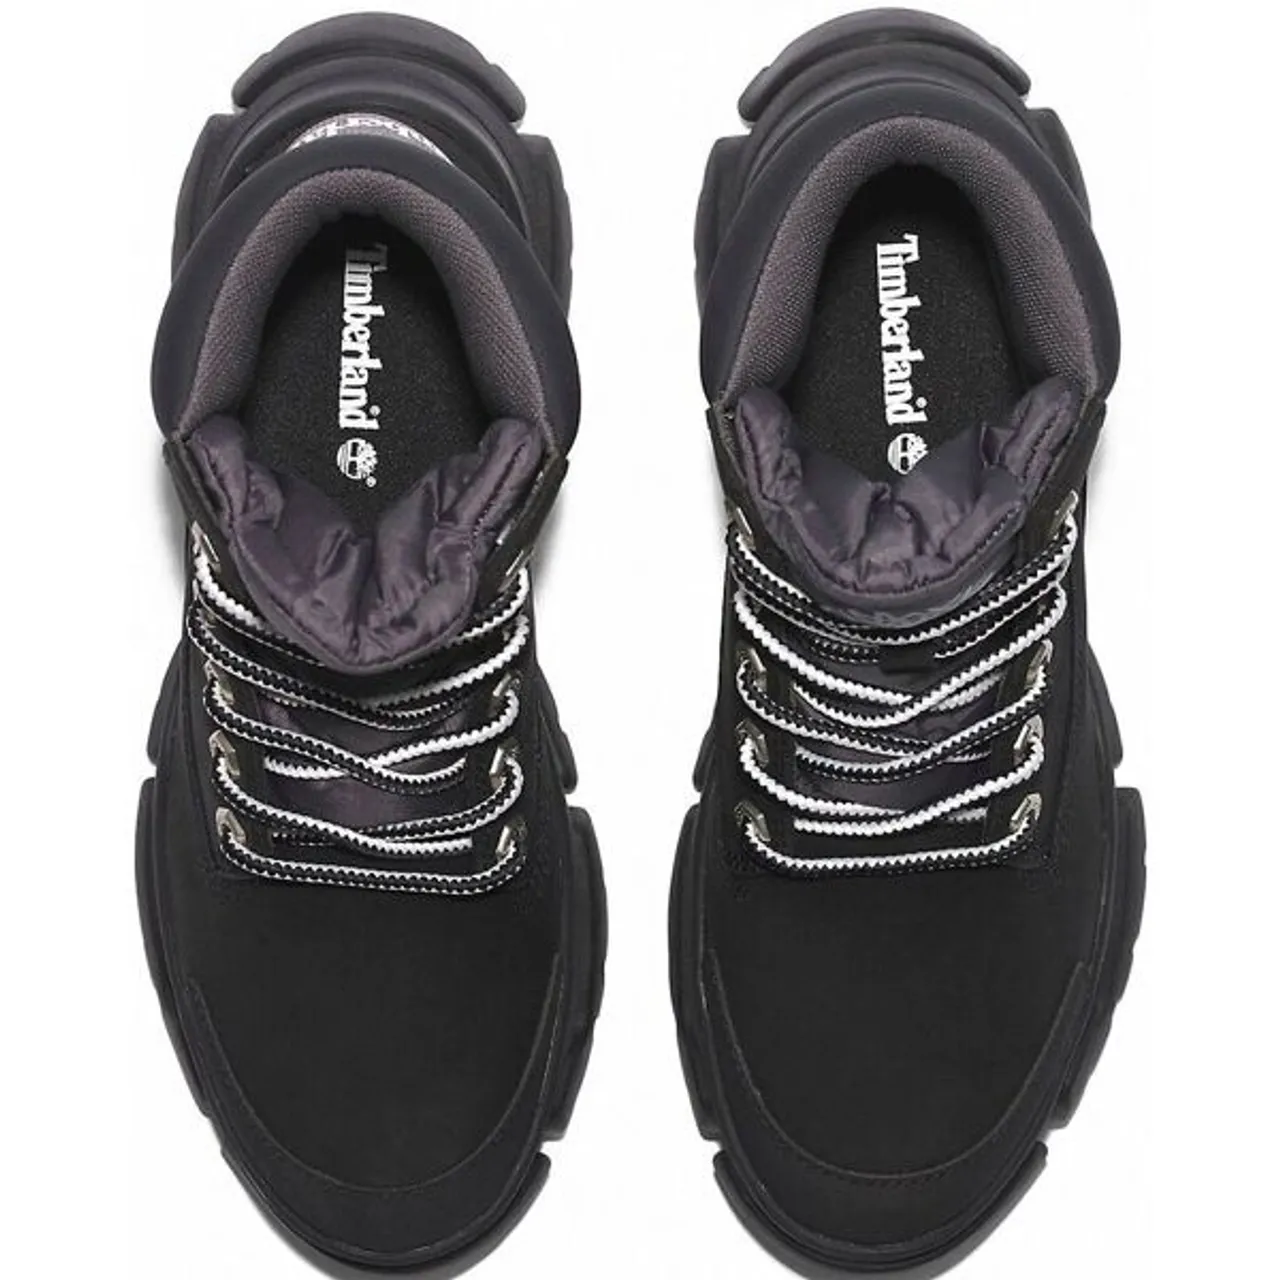 Schnürboots TIMBERLAND "Adley Way Sneaker Boot" Gr. 40, schwarz (black) Schuhe Schnürstiefeletten